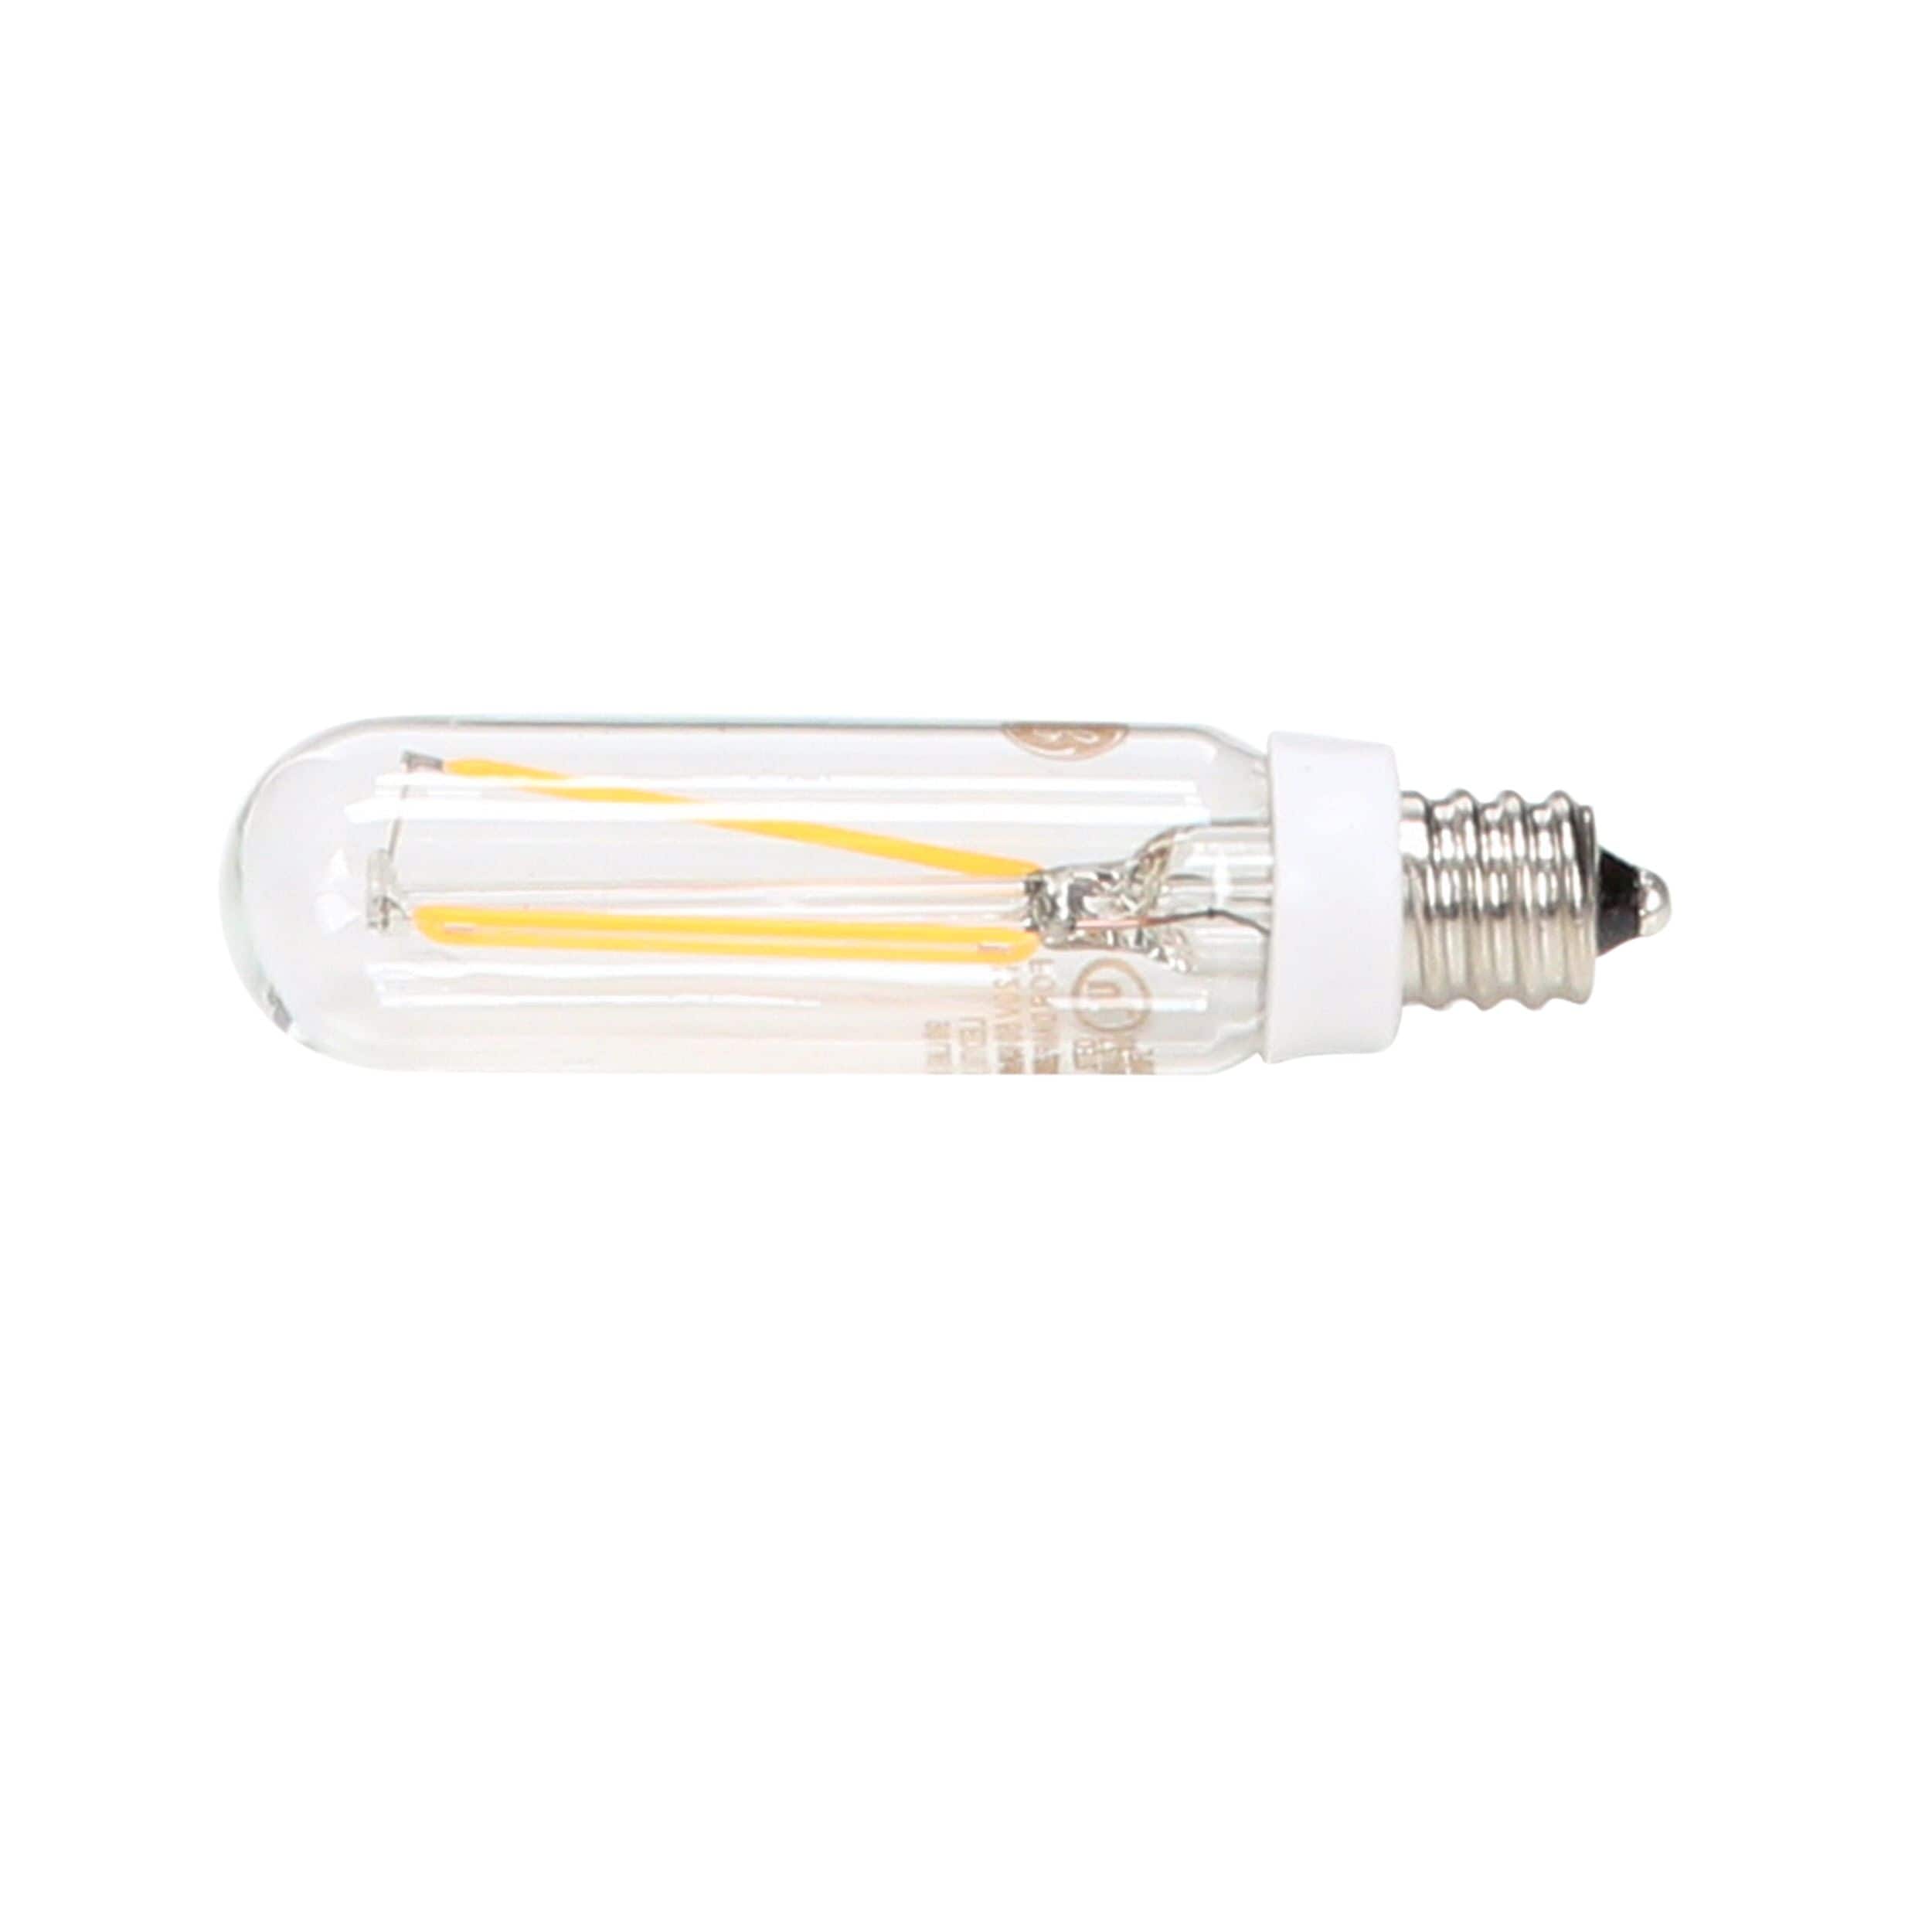 GE Lighting 13390 15-Watt 107-Lumen Specialty T6 Incandescent Light Bulb Crystal Clear 